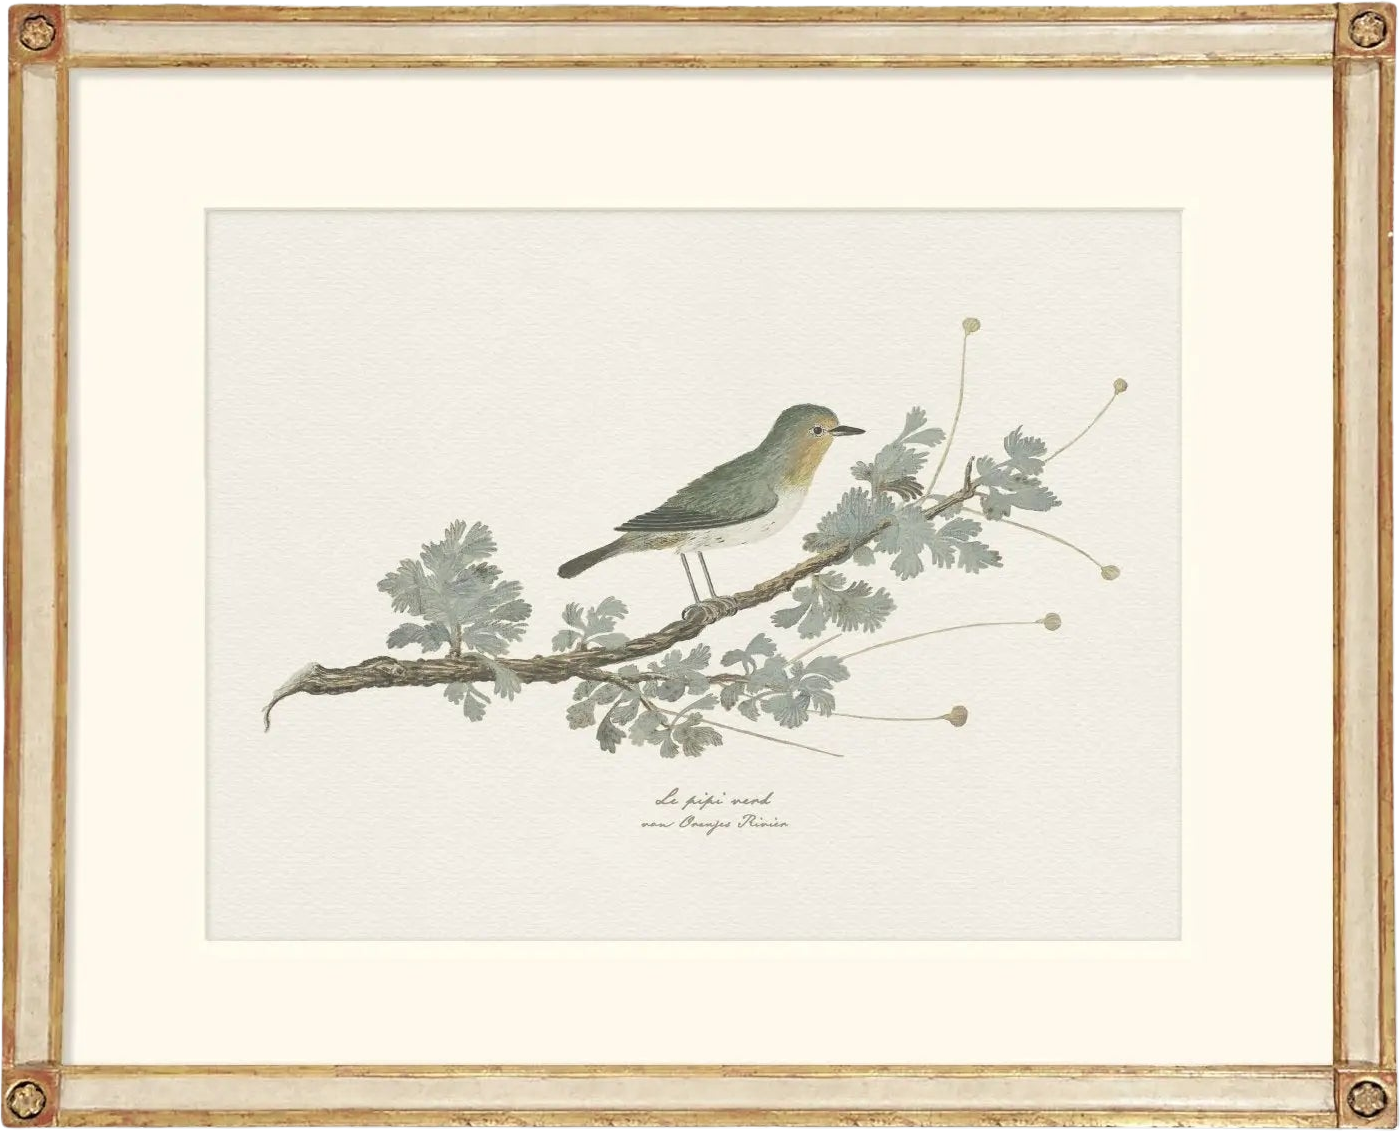 Botanicals & Birds - Orange River Bird